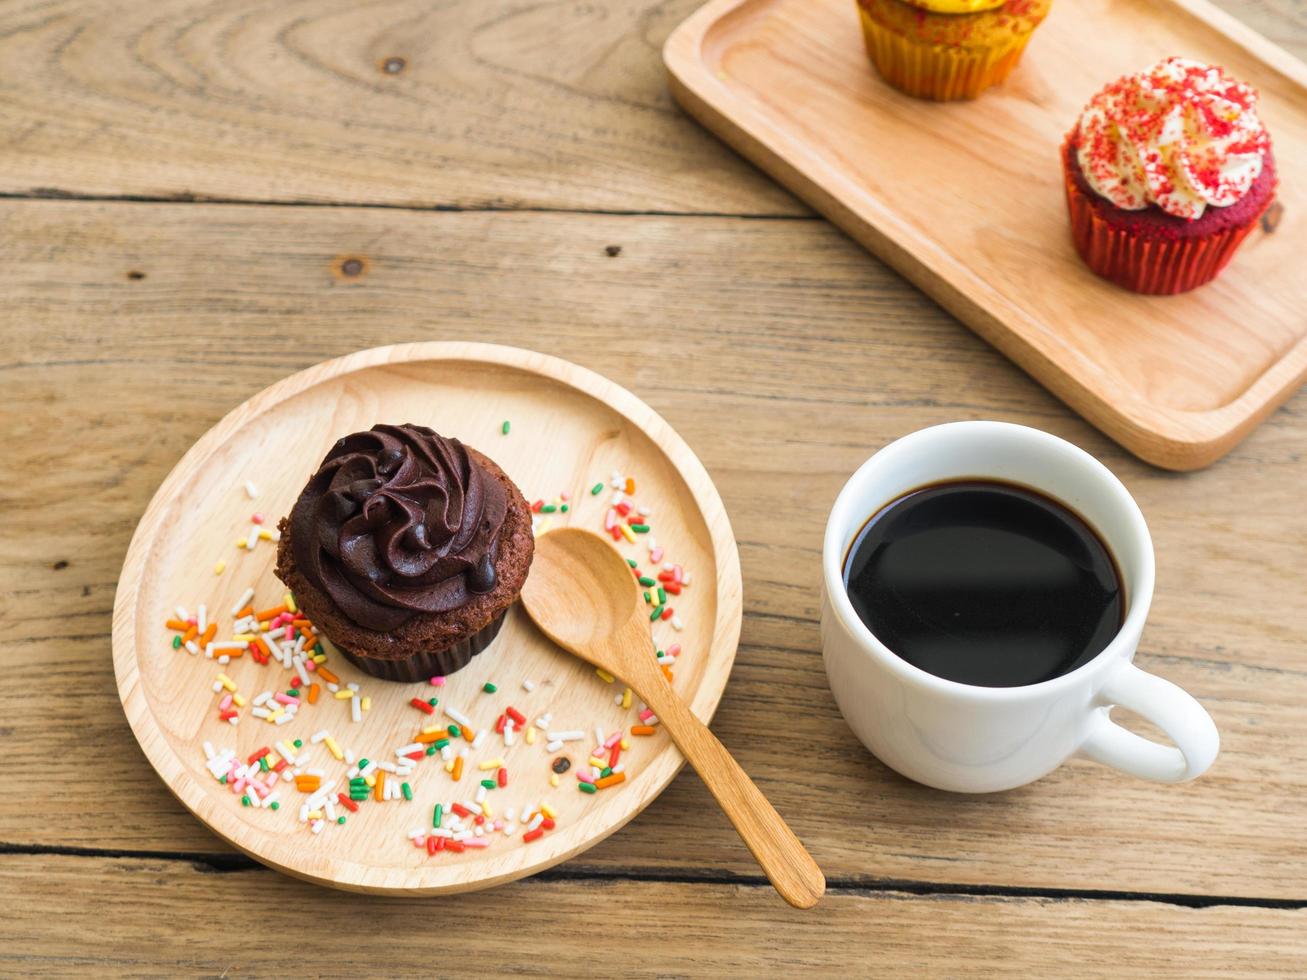 cupcake de chocolate colocado em uma placa de madeira esférica. ao lado do cupcake tem despertador vintage e caneca de café branco. no fundo tem cupcake amarelo e cupcakes vermelhos. foto